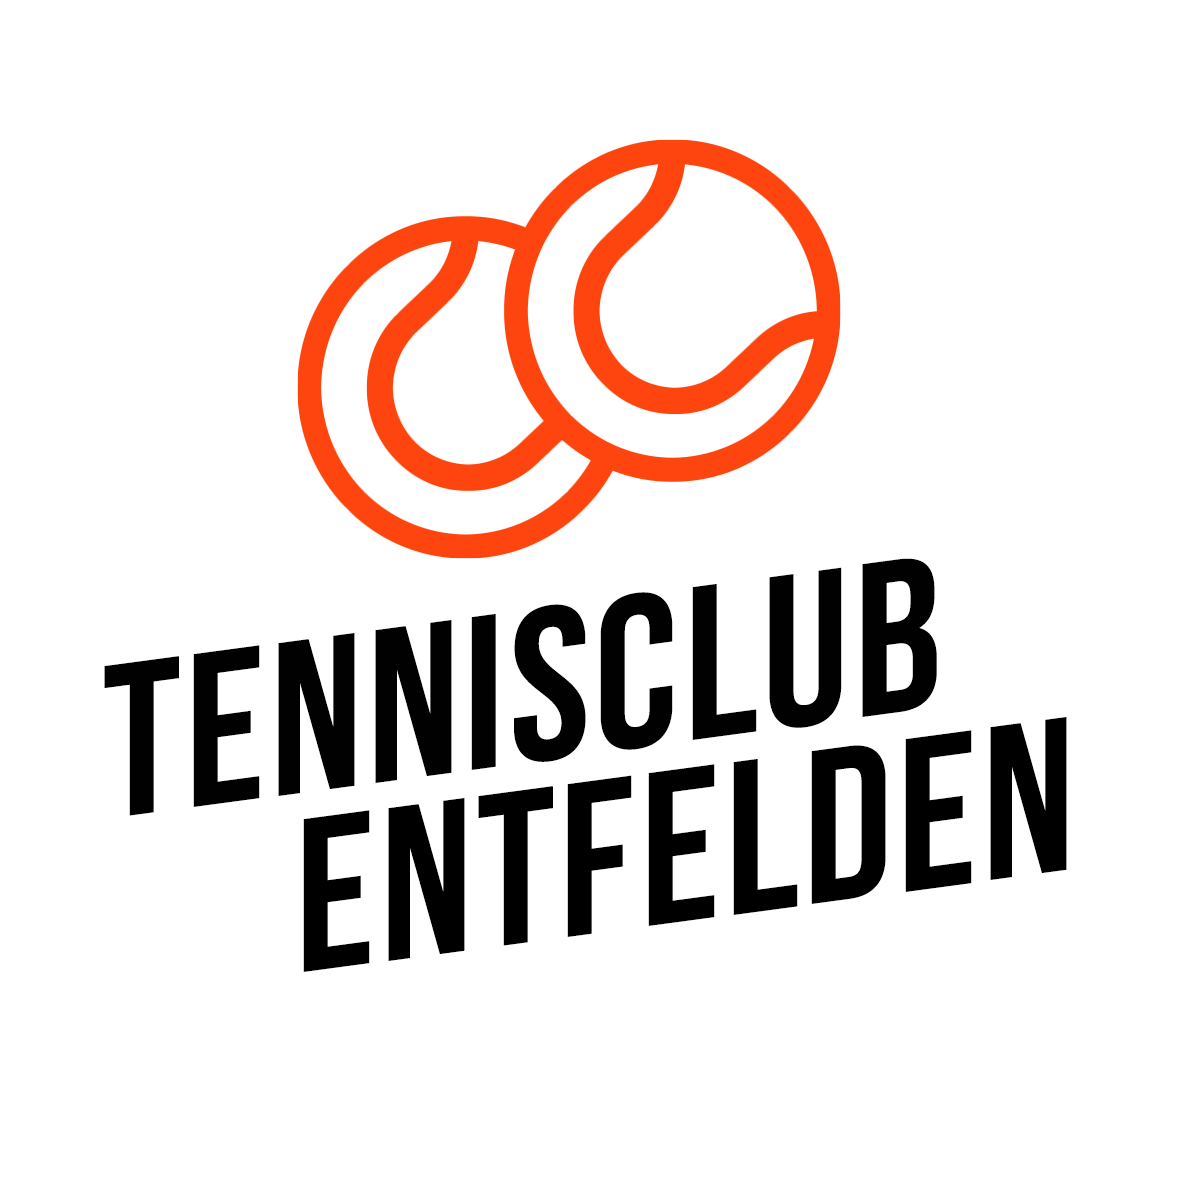 Tennisclub Entfelden